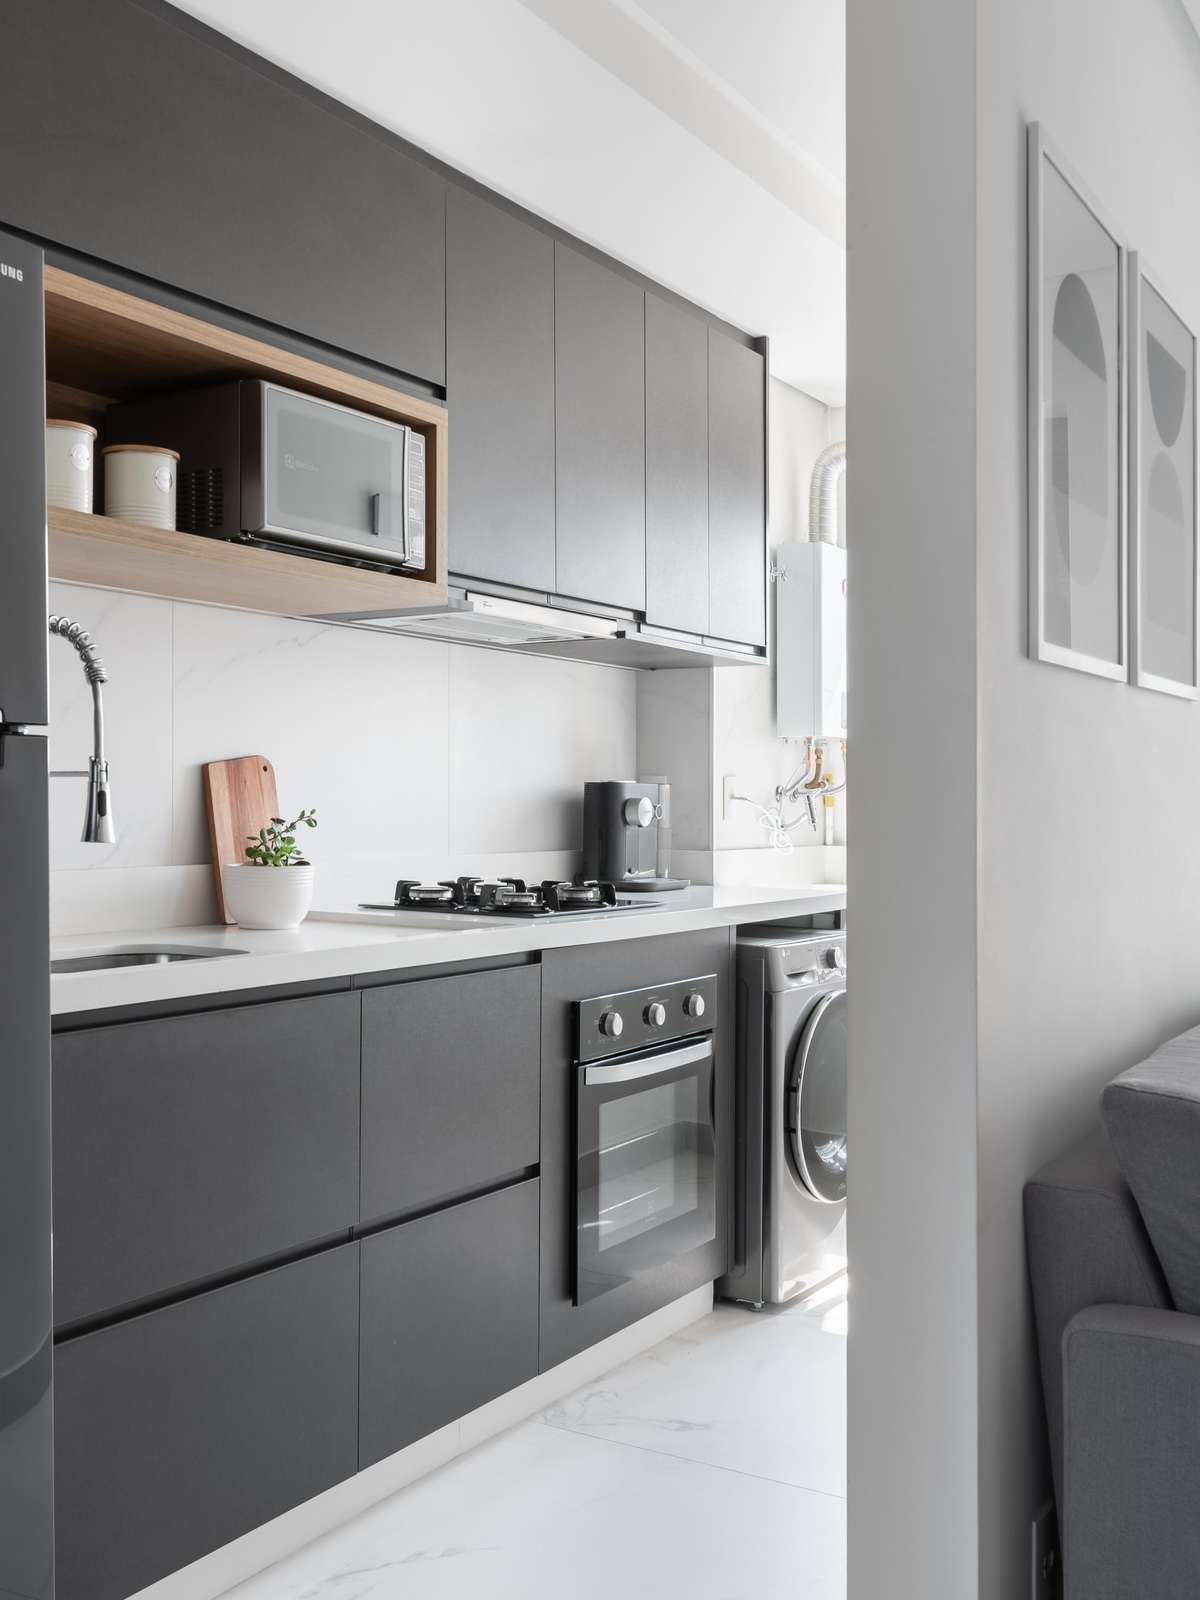 53m²: cor cobre e decoração clean personalizam um apê  Decoração cozinha  apartamento pequeno, Decoração de casas simples, Decoração cozinha pequena